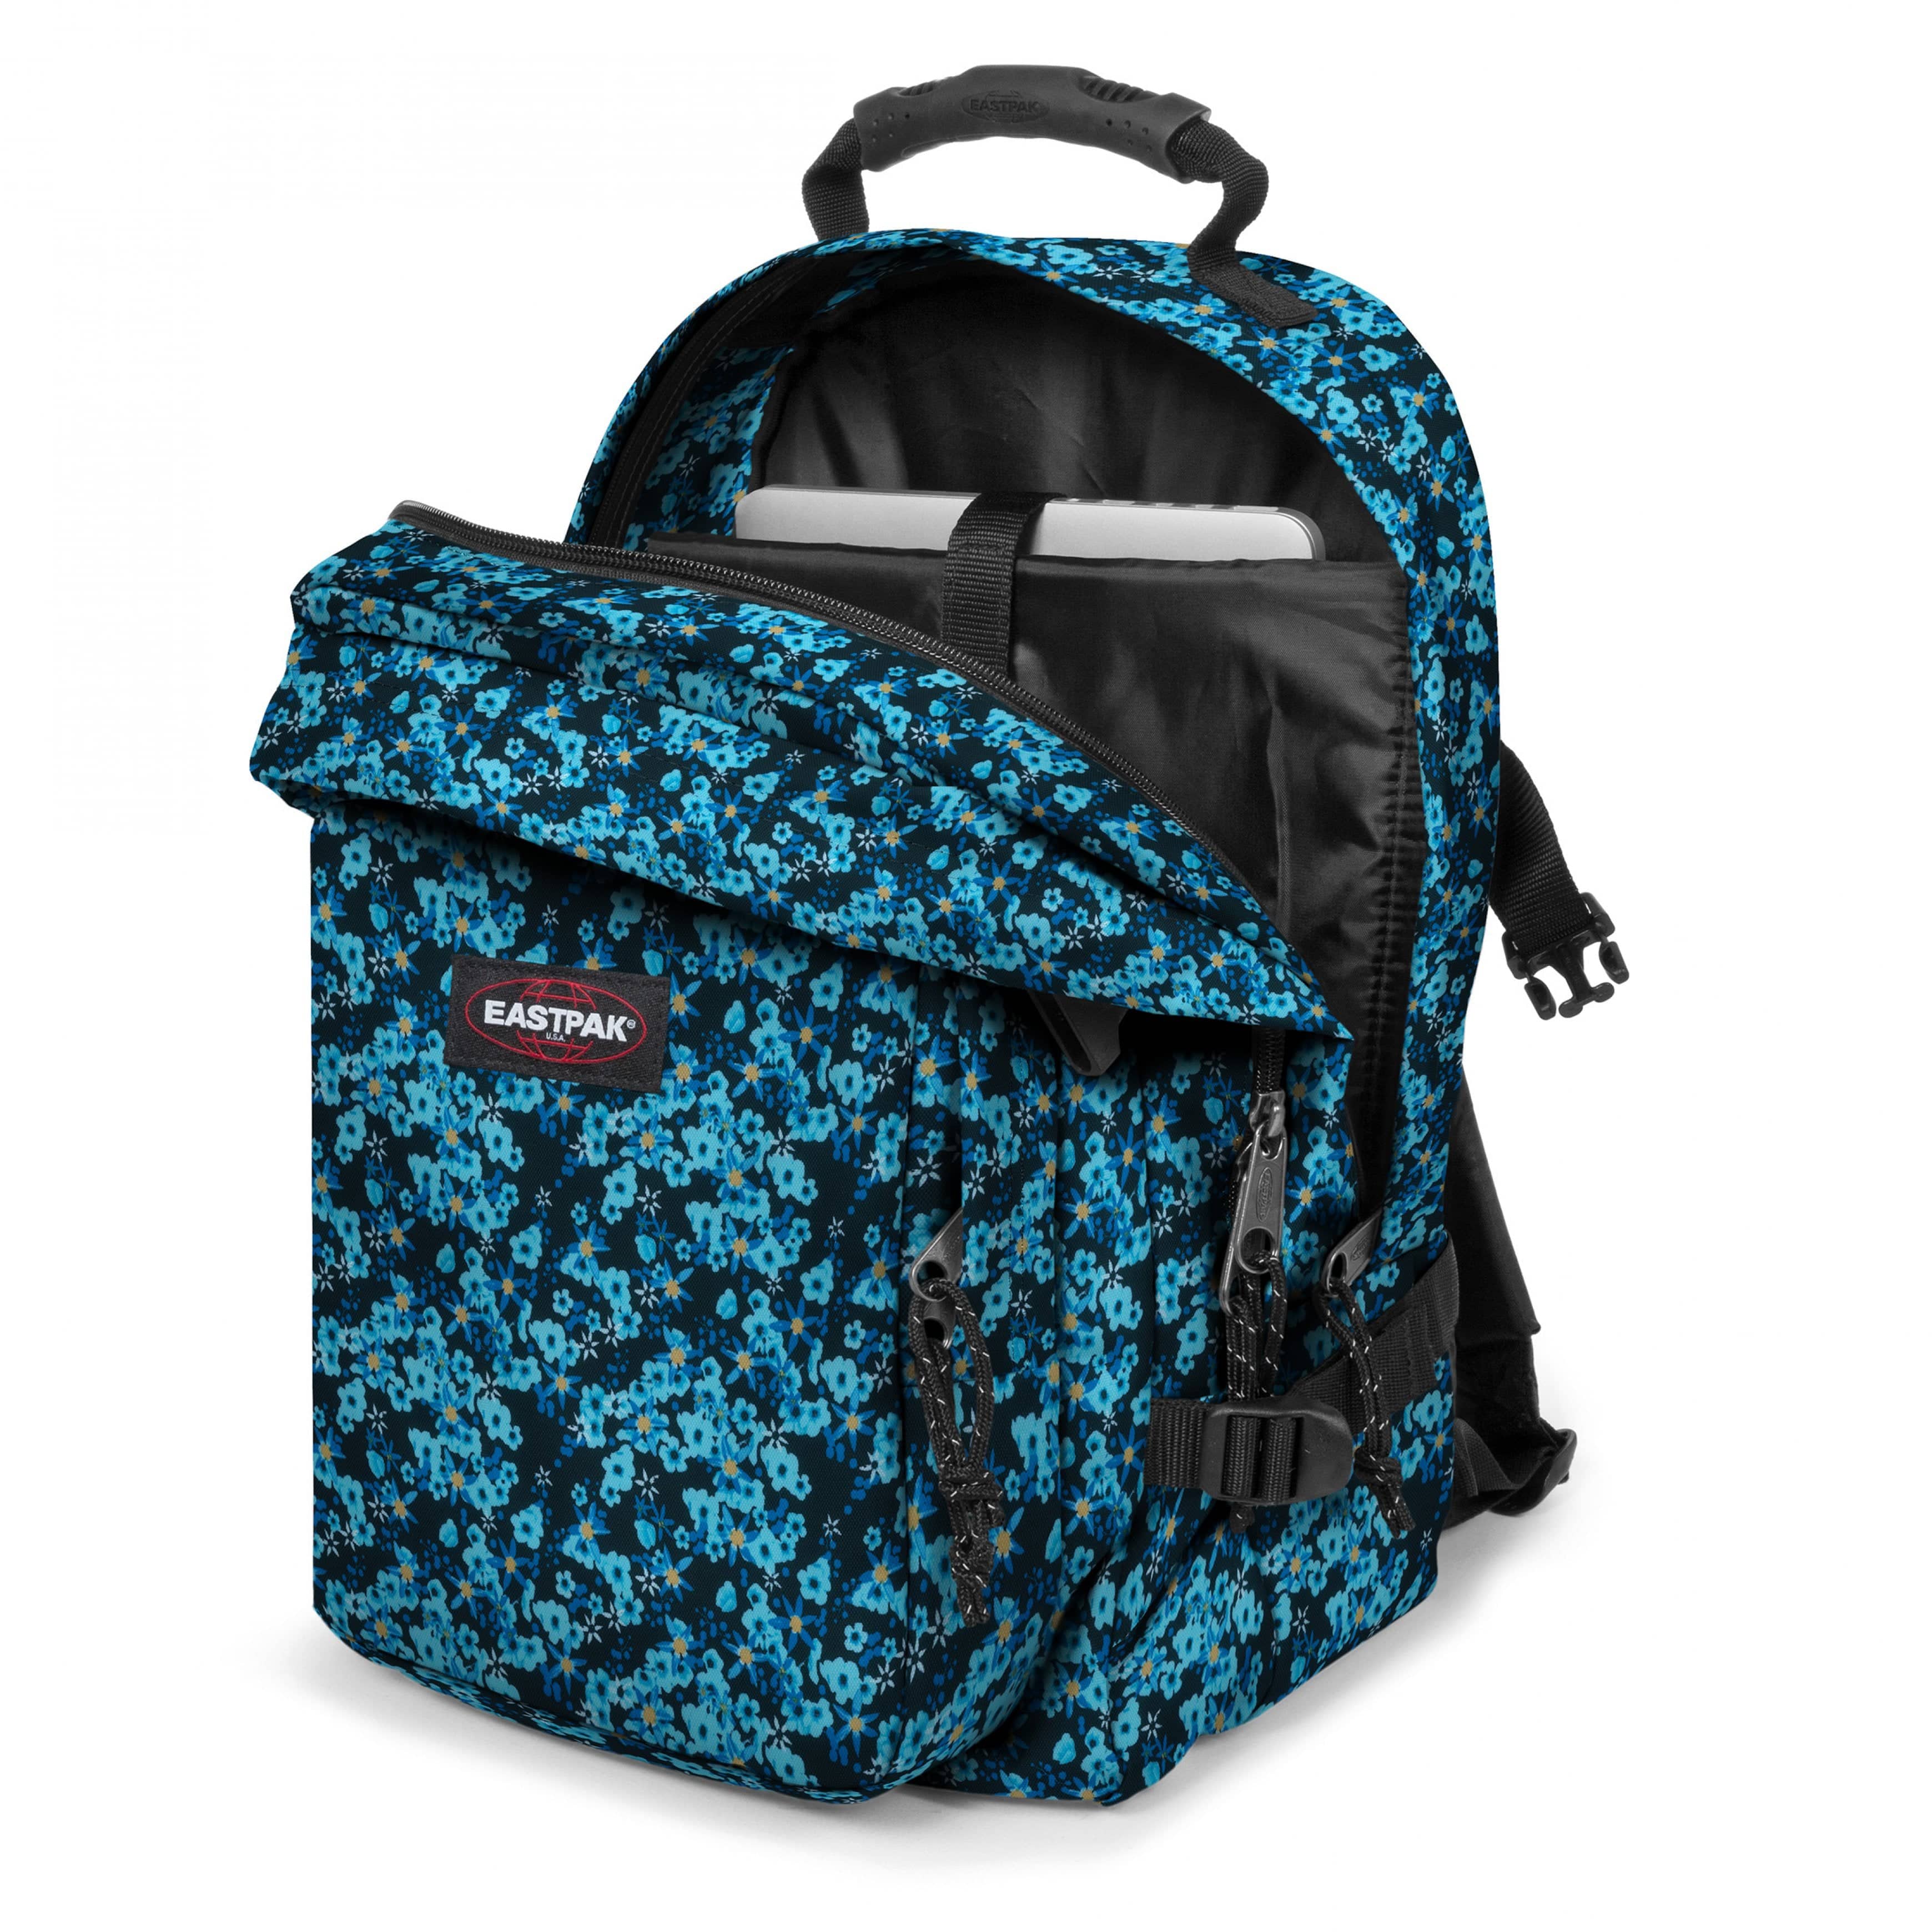 Eastpak-Provider-Large Backpack with laptop compartment-Ditsy Black-EK000520U51